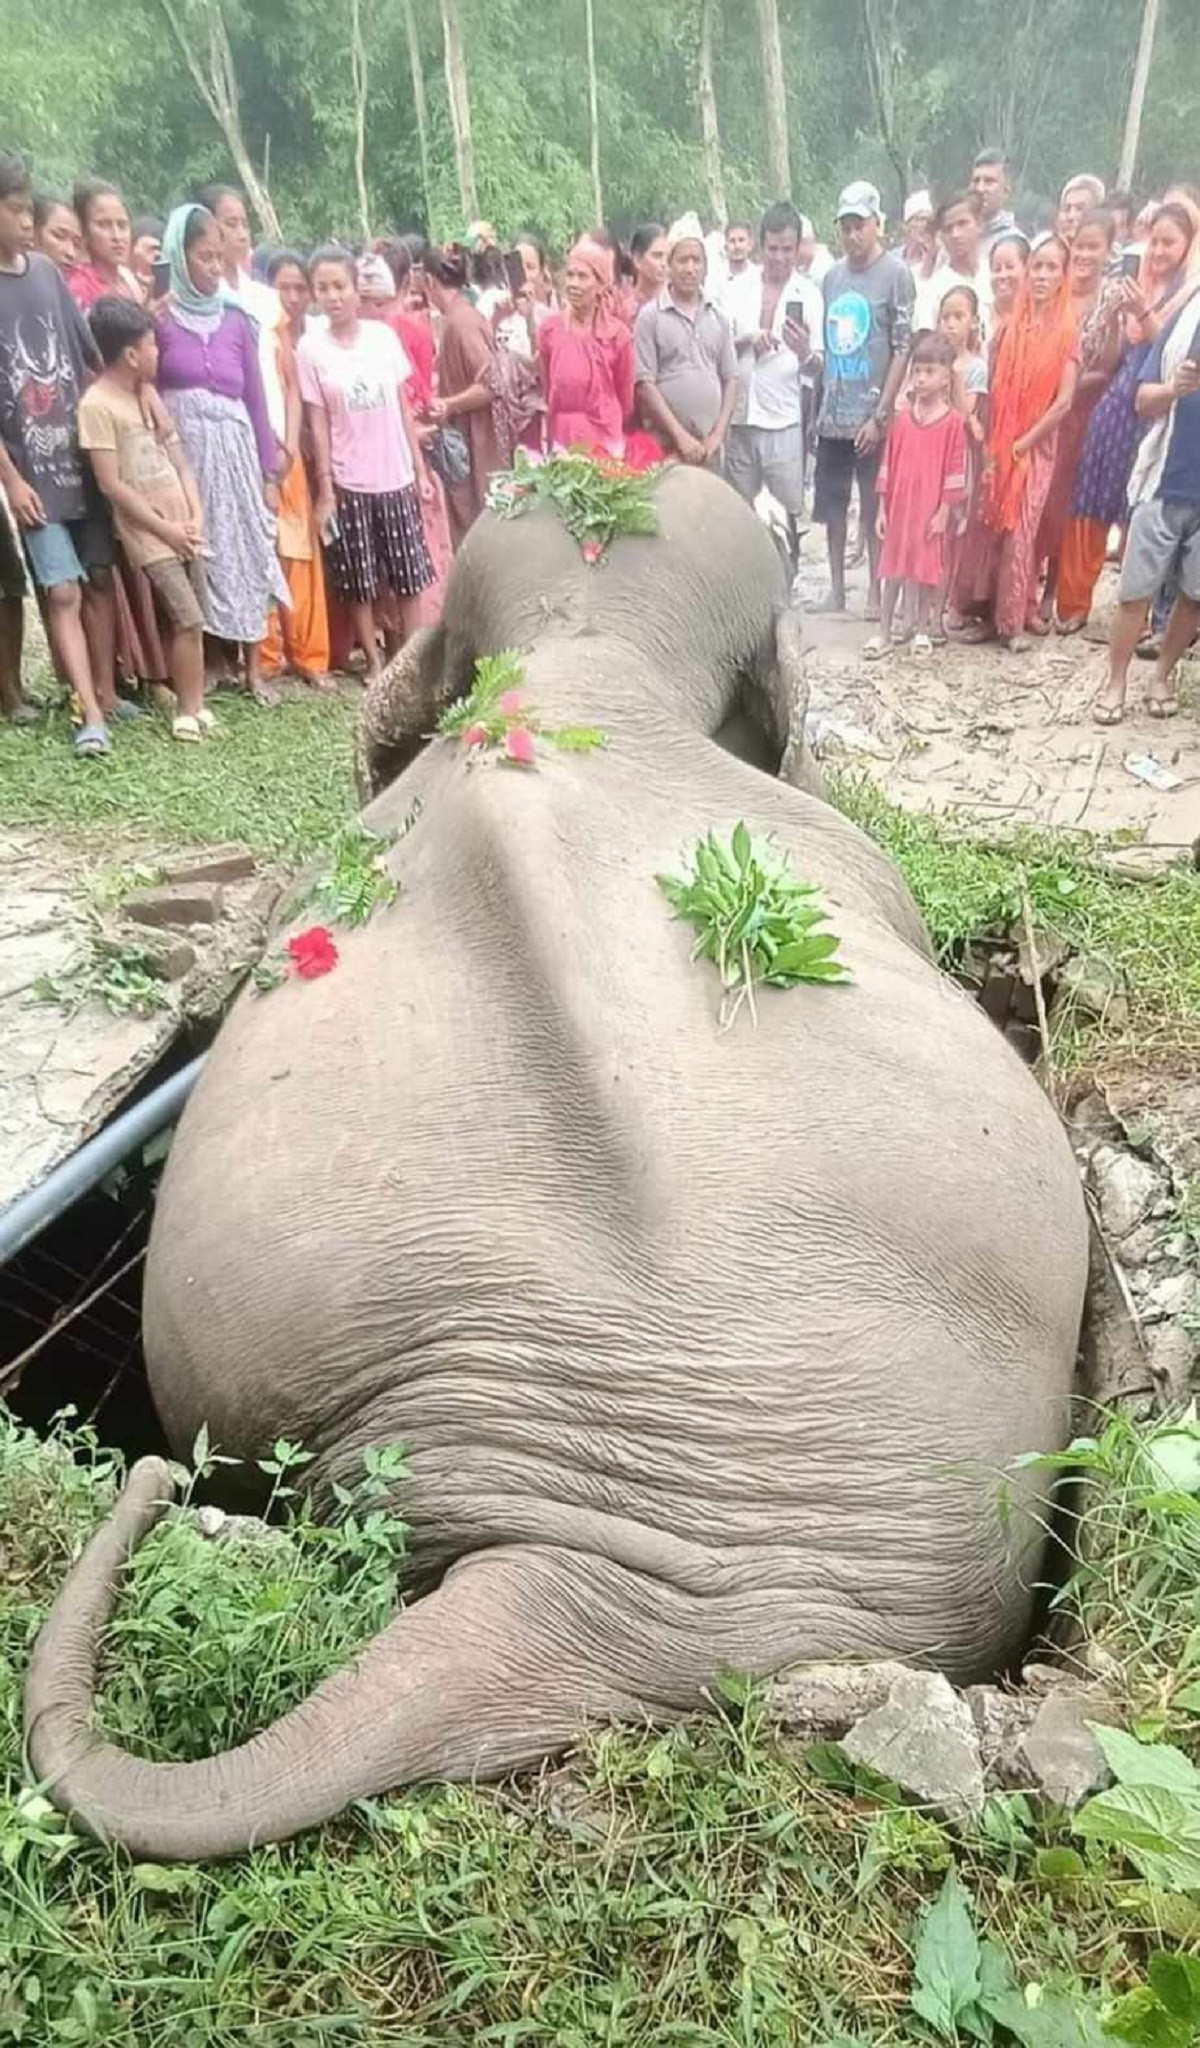 elephant_dead_nepal_rssphoto31692278262.jpg